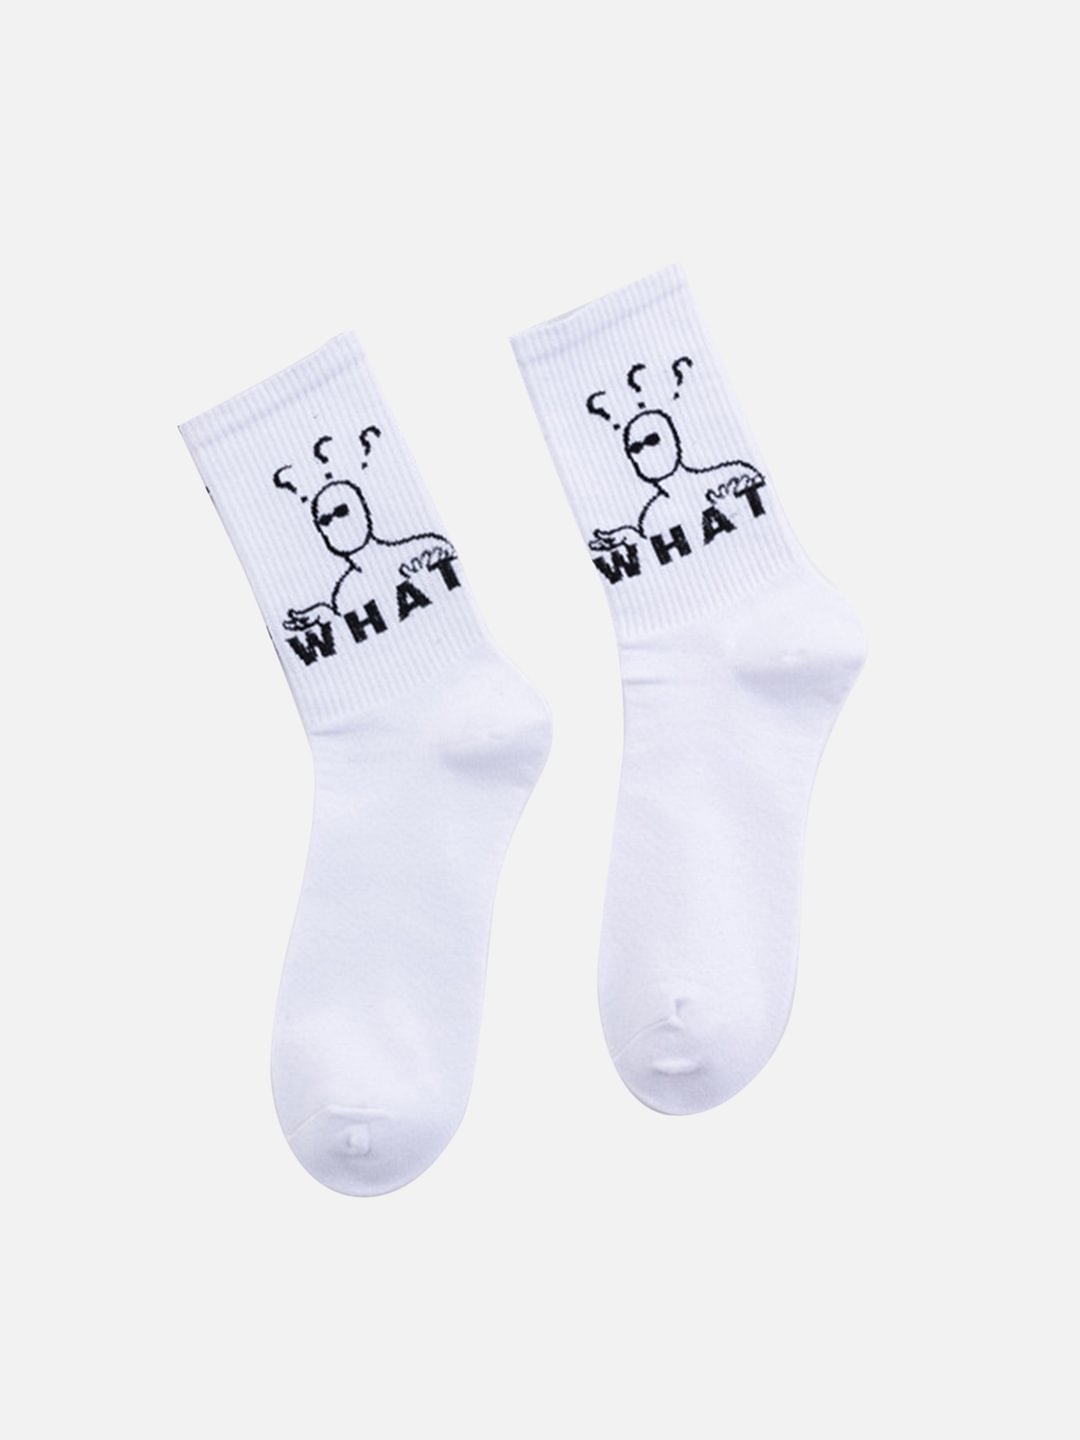 Fun Pattern Socks / Techwear Club / Techwear